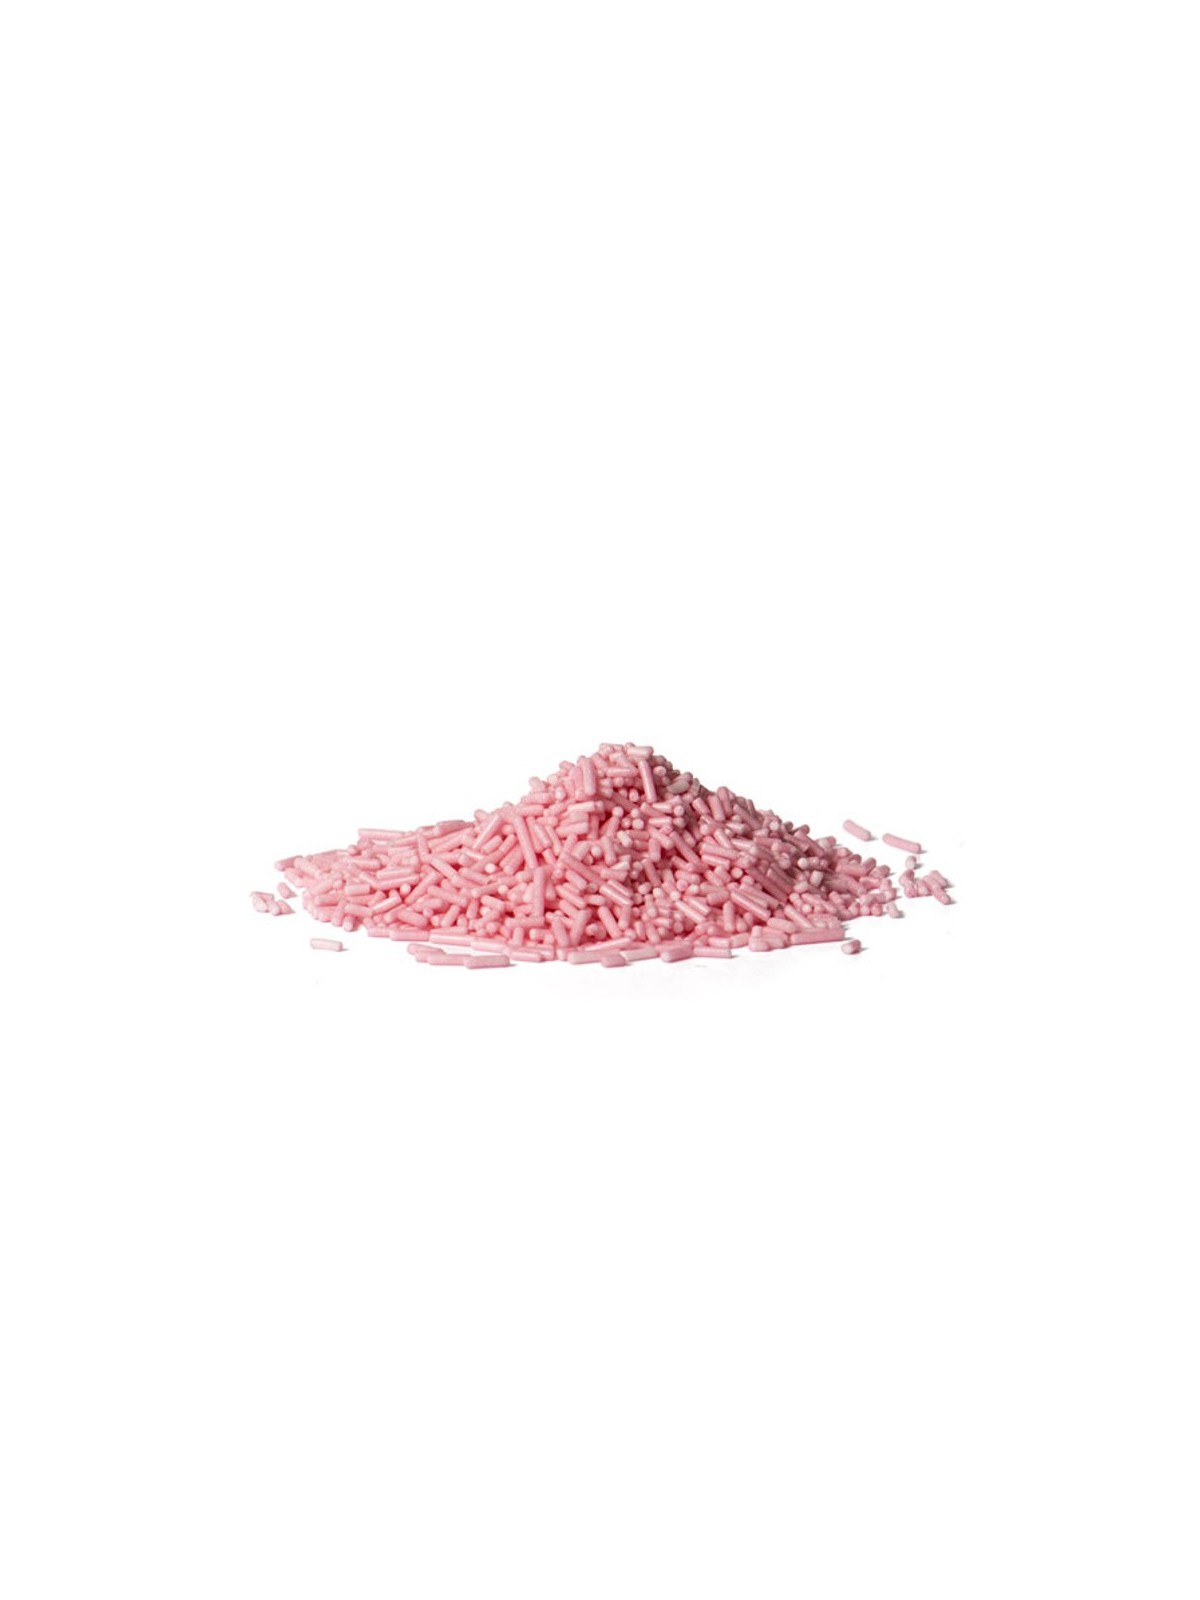 Ryż cukrowy - różowy 100g